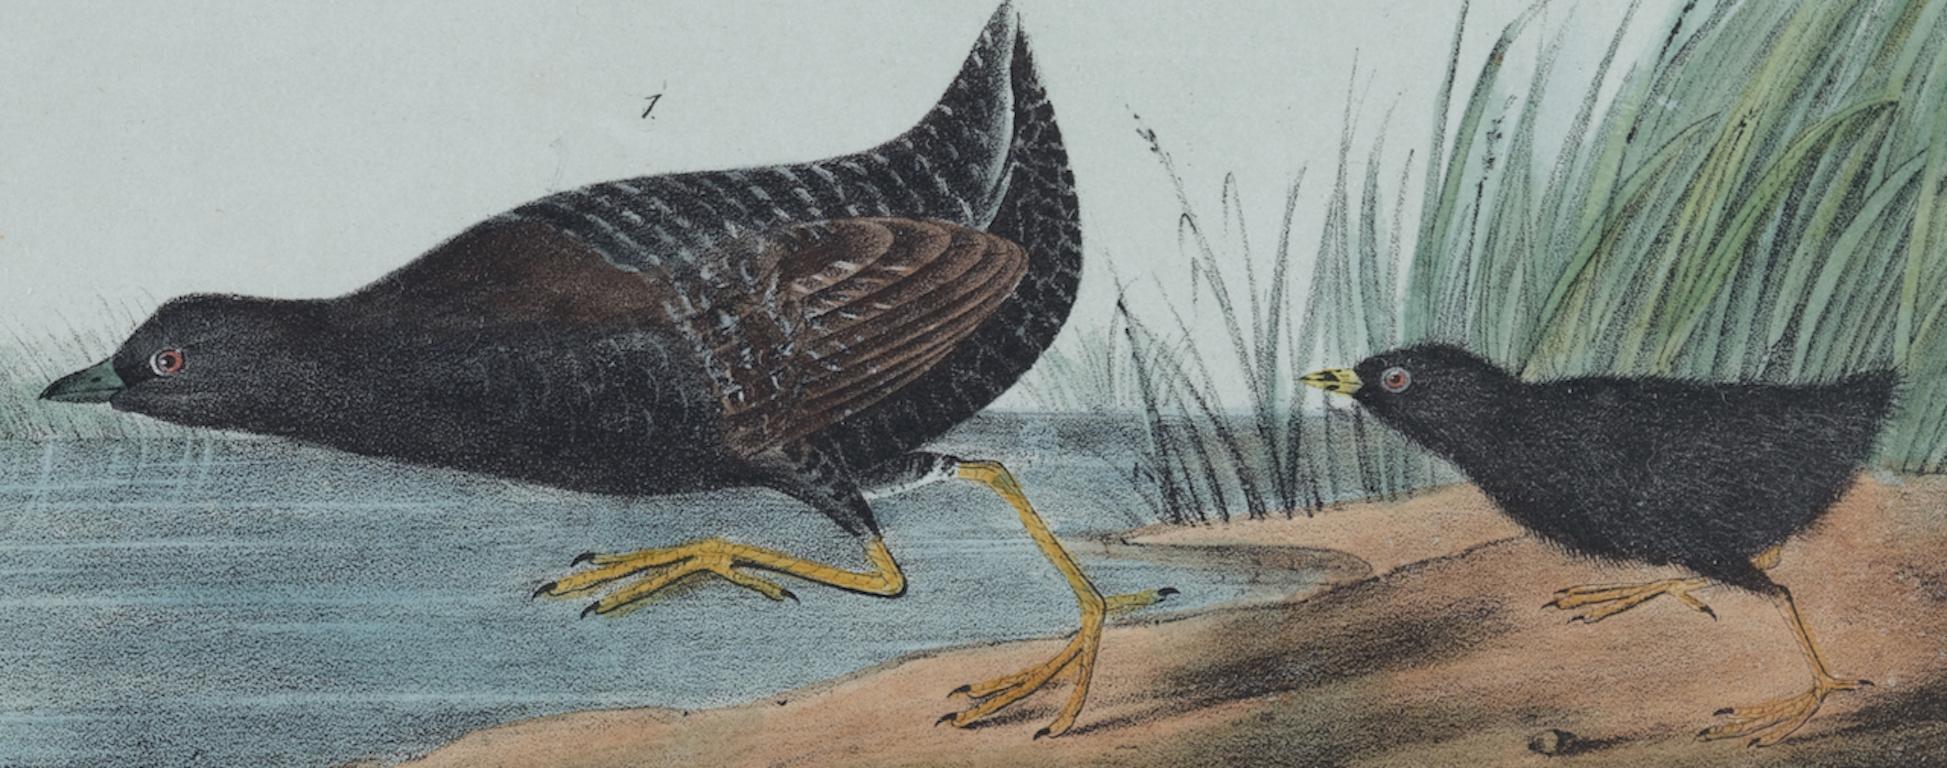 Aquarelle Least : une lithographie originale d'oiseaux Audubon du 19e siècle, colorée à la main  - Naturalisme Print par John James Audubon